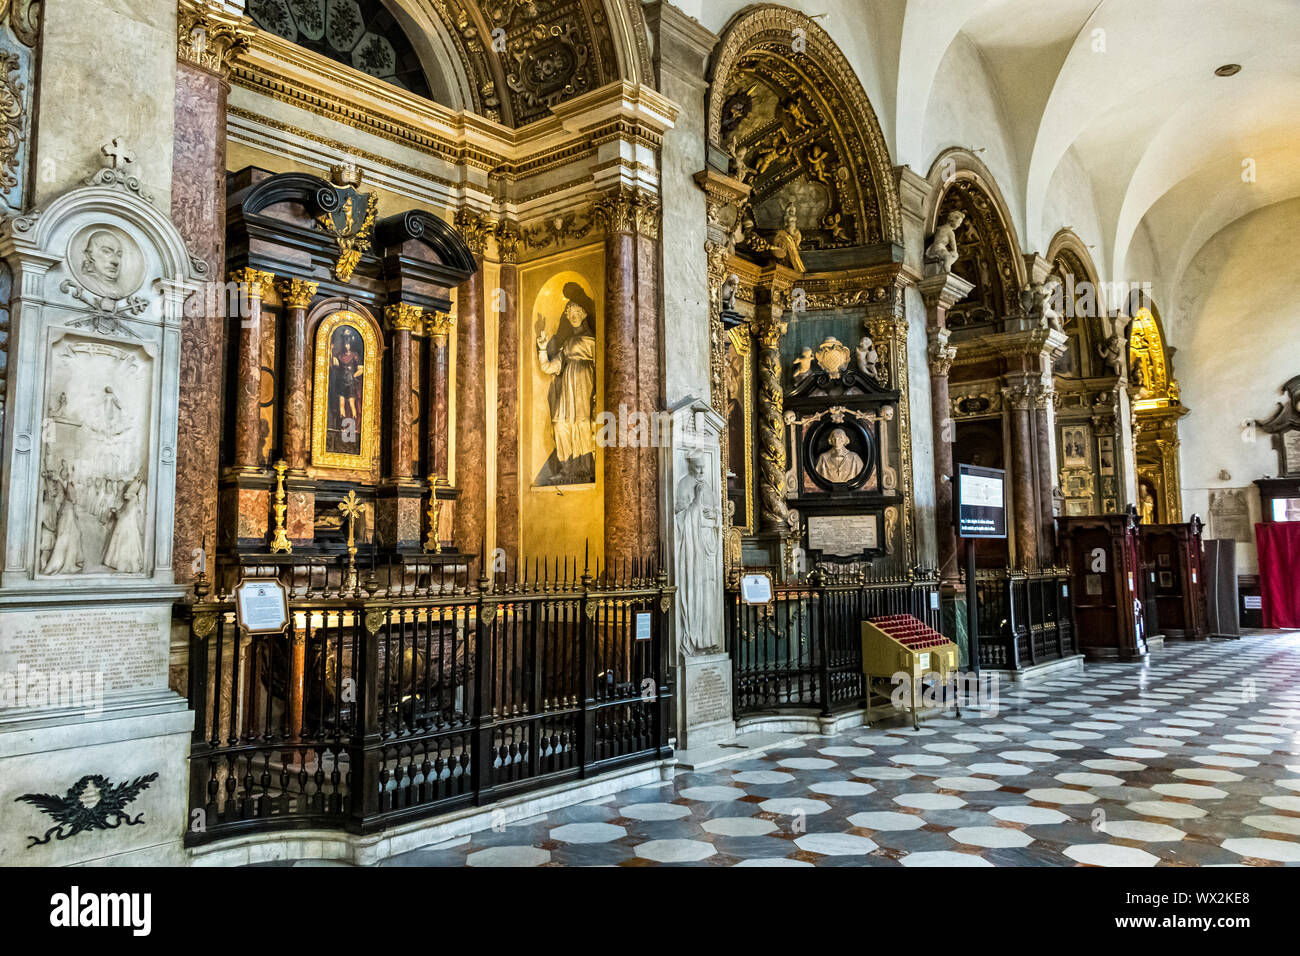 Das Innere des Duomo di Torino, Turin Kathedrale, eine römisch-katholische Kathedrale in Turin, dem heiligen Johannes dem Täufer, Turin, Italien Stockfoto